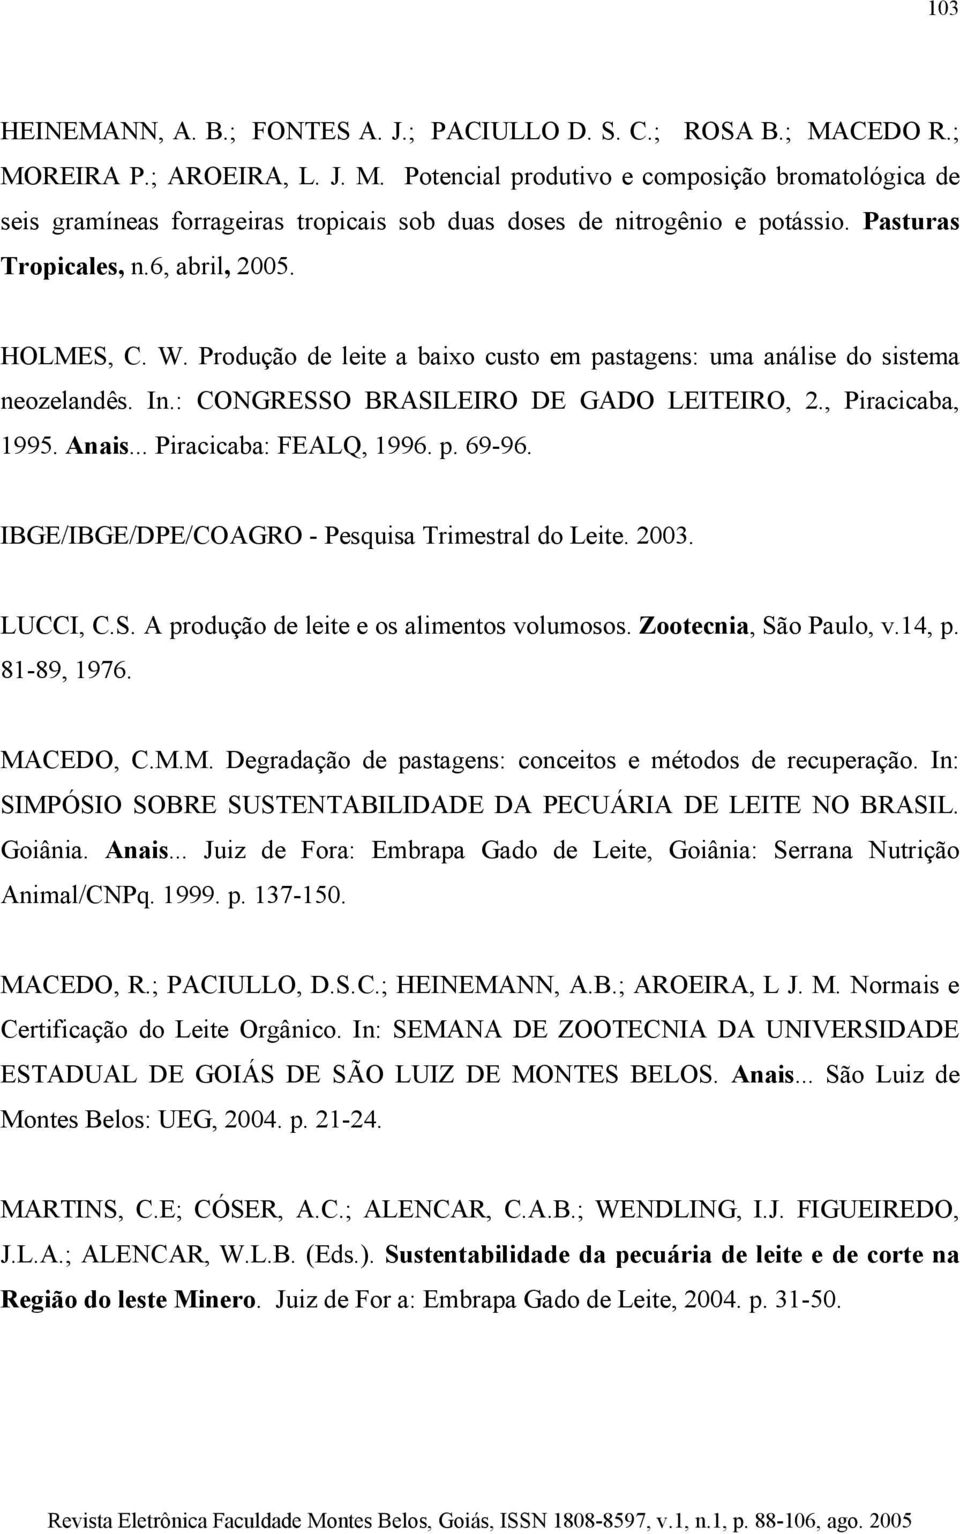 Anais... Piracicaba: FEALQ, 1996. p. 69-96. IBGE/IBGE/DPE/COAGRO - Pesquisa Trimestral do Leite. 2003. LUCCI, C.S. A produção de leite e os alimentos volumosos. Zootecnia, São Paulo, v.14, p.